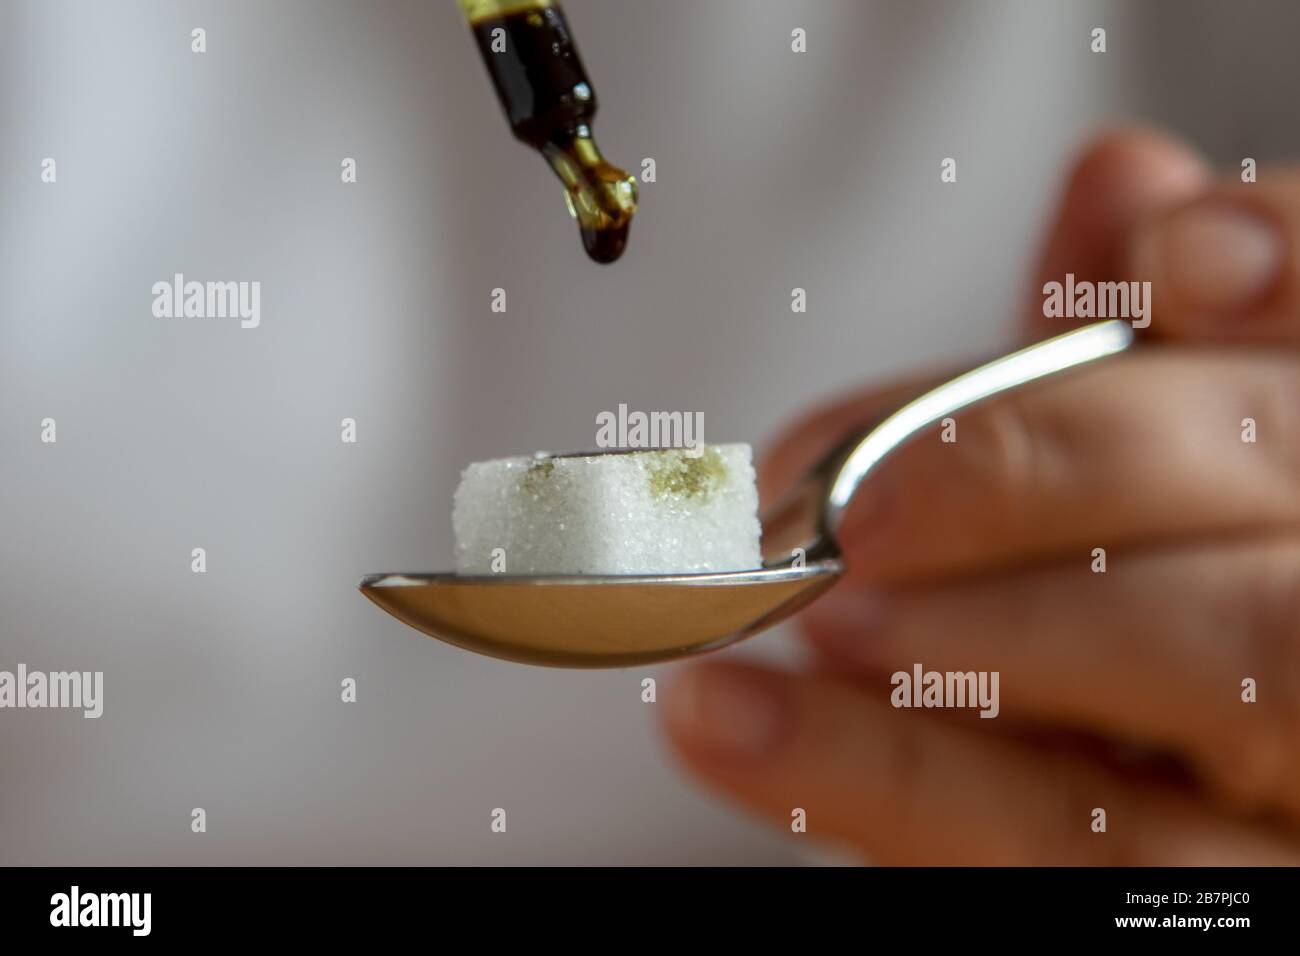 Zuckerwürfel auf einem Teelöffel, Medikamente werden Tropfen für Tropfen  mit einer Pipette hinzugefügt Stockfotografie - Alamy